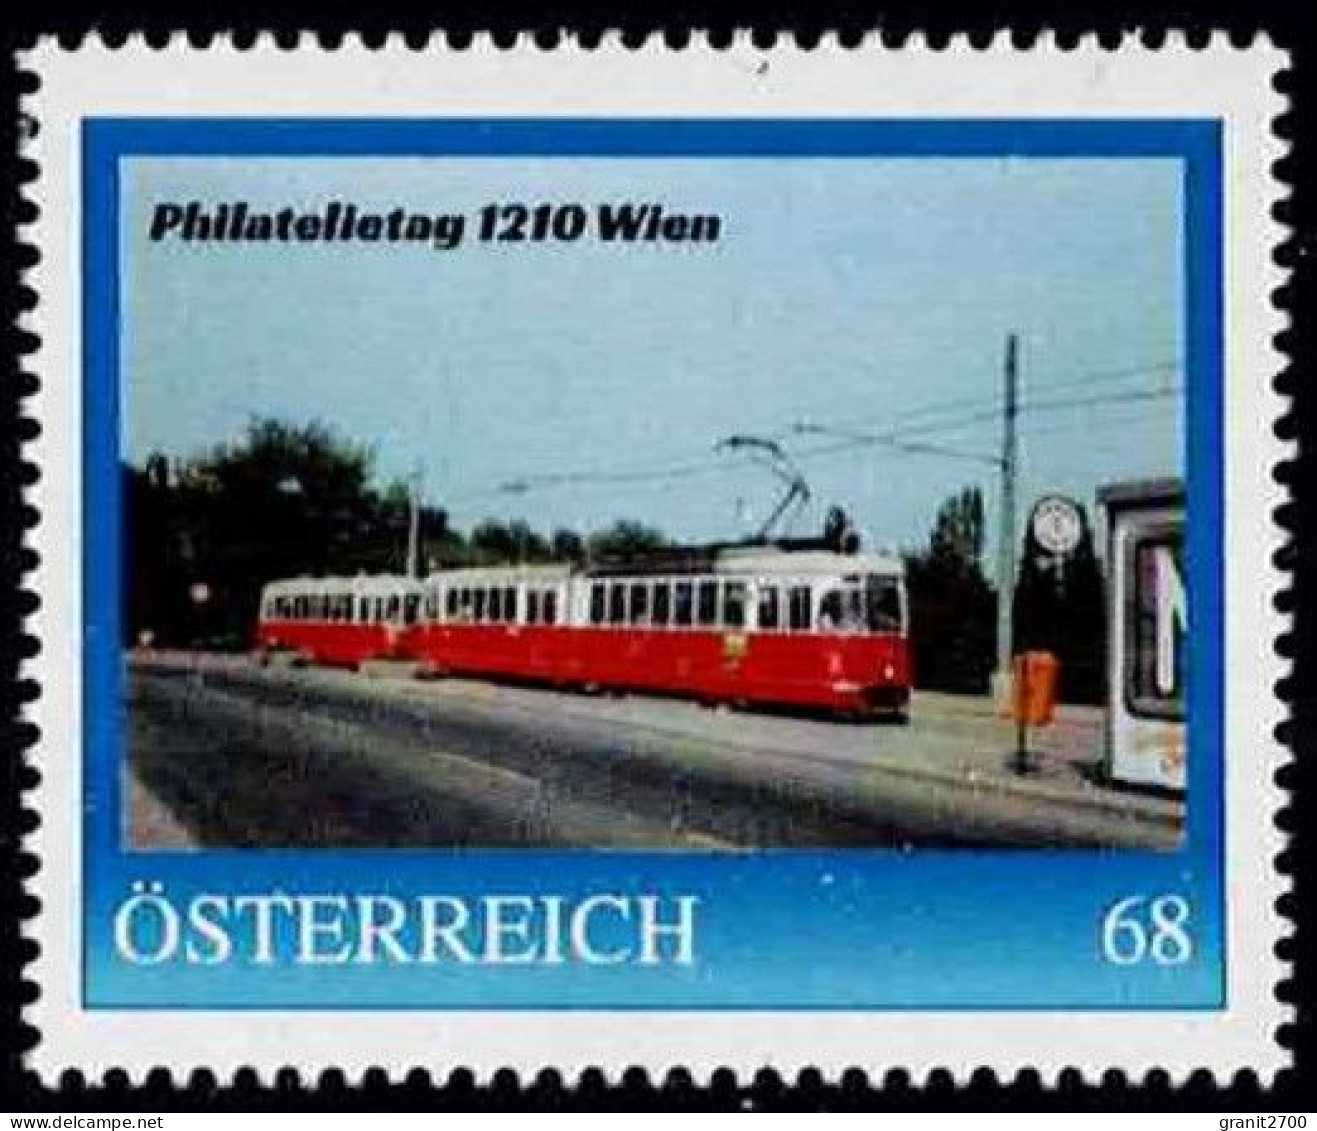 PM  Philatelietag 1210 Wien Ex Bogen Nr.  8126423  Vom 26.4.2018 Postfrisch - Personnalized Stamps